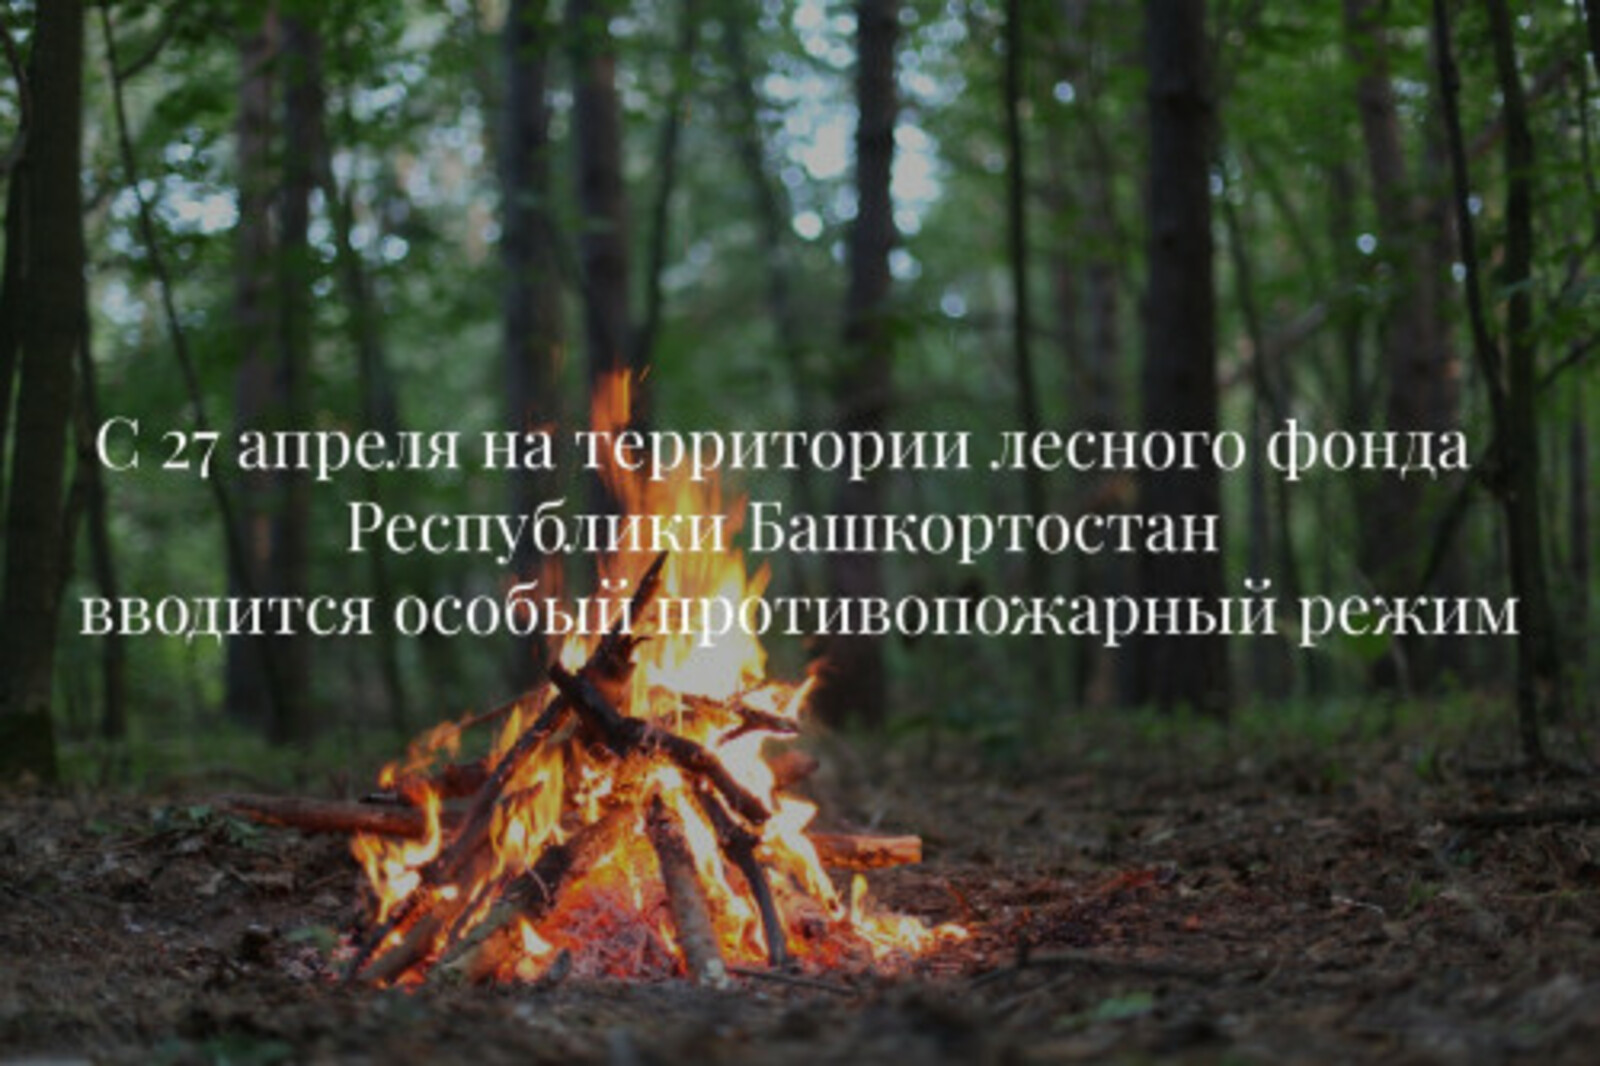 В лесах Башкортостана с 27 апреля вводится особый противопожарный режим